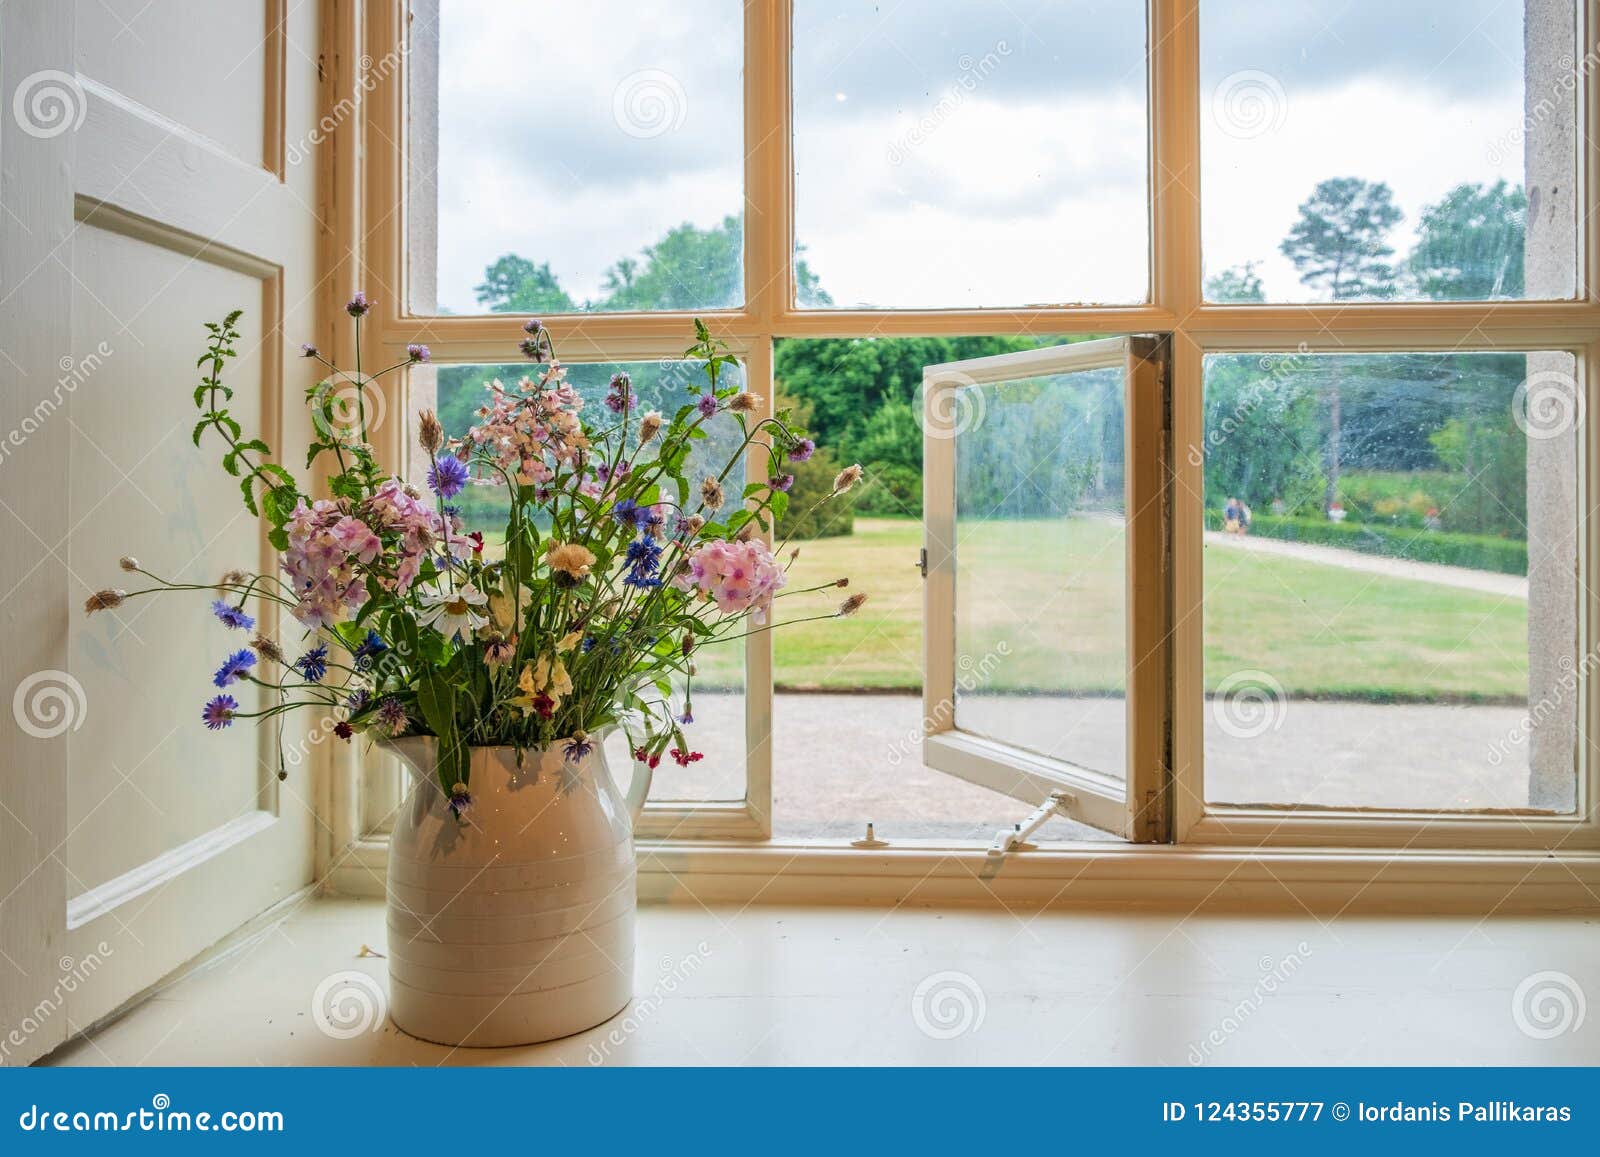 Blumen Und Fensteransicht In Garten Von Traditionellen Englisch Stockbild Bild Von Garten Fensteransicht